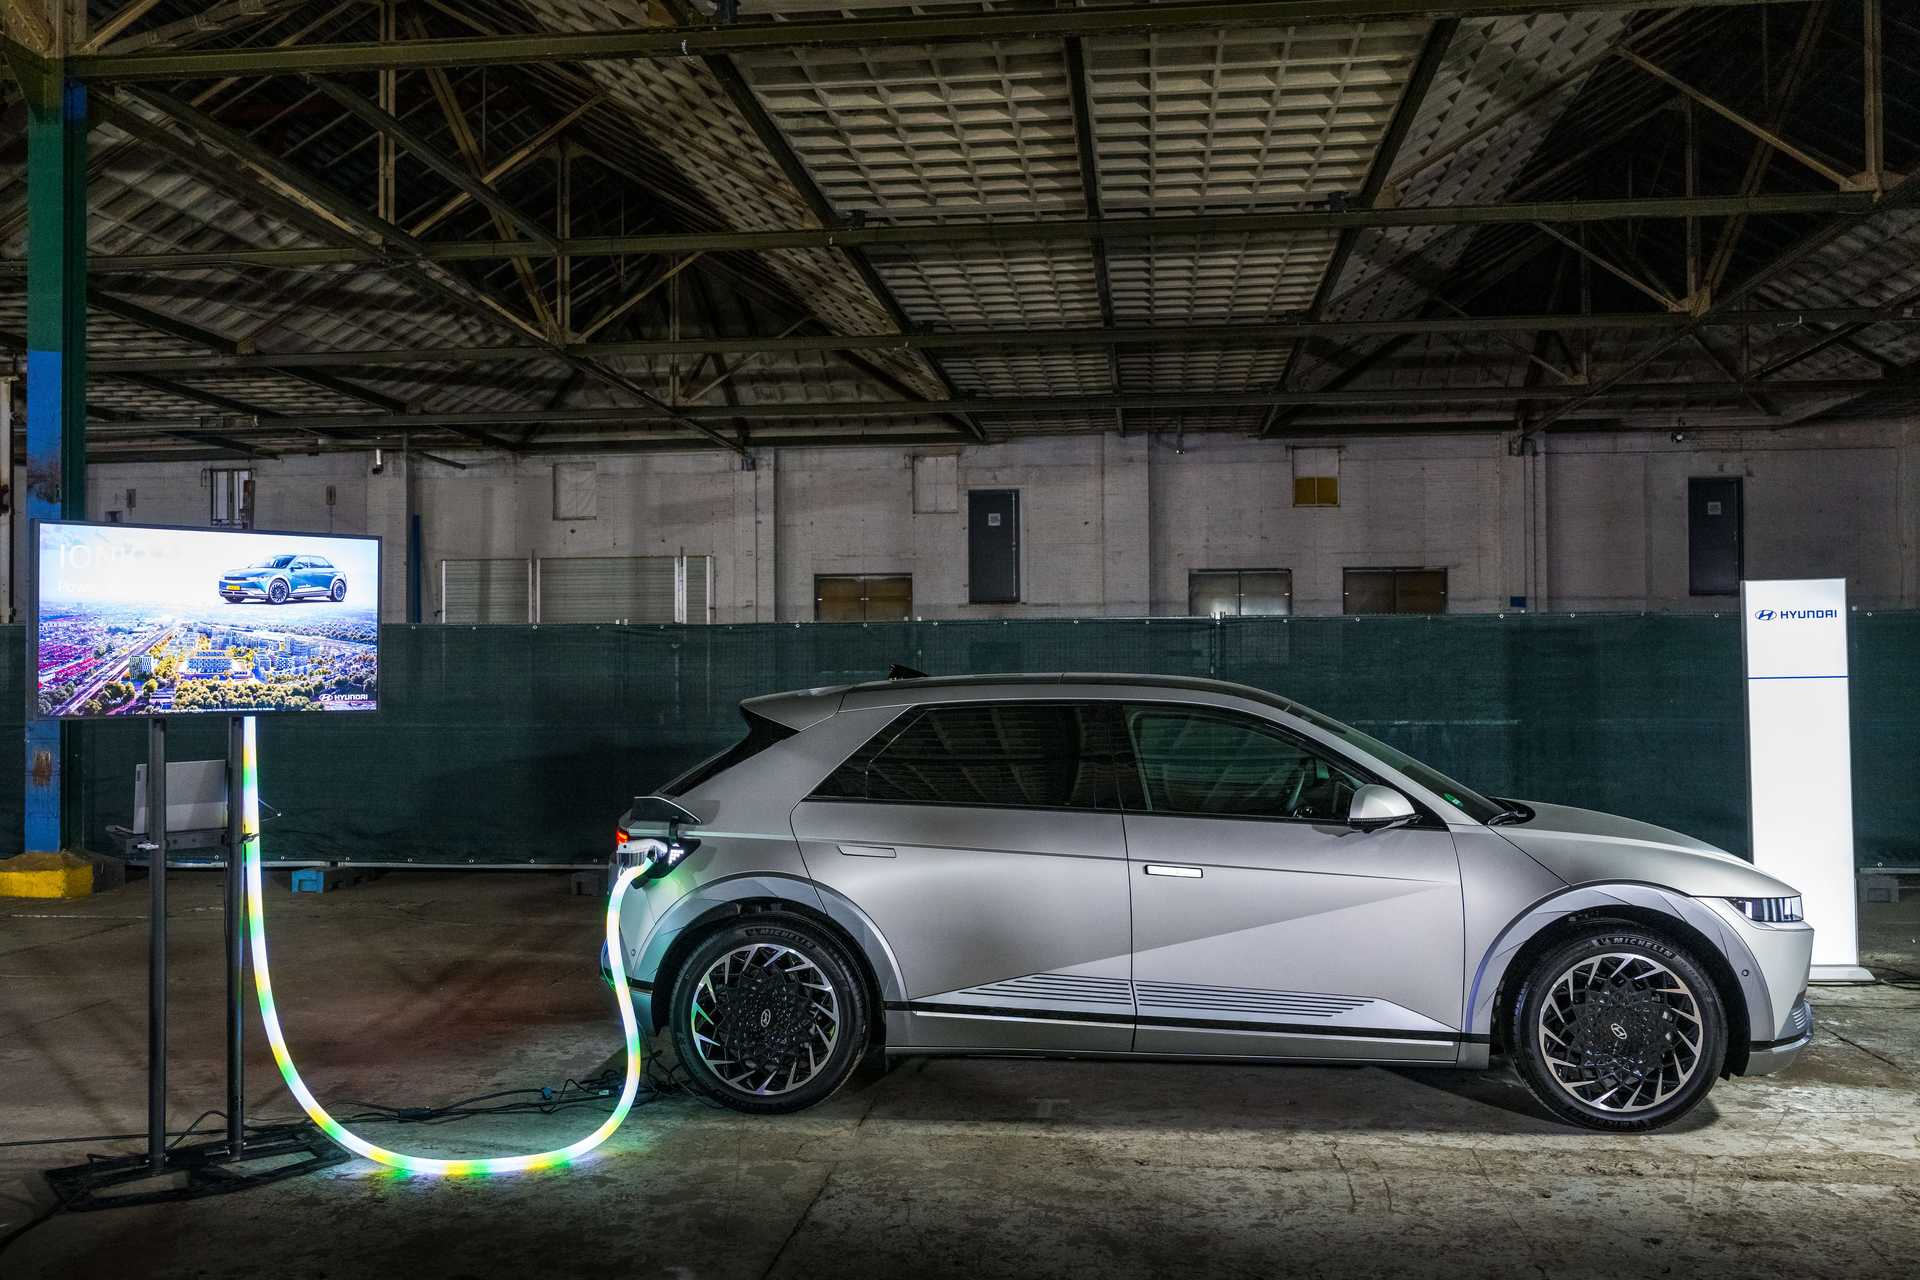 Et si on mettait un peu plus d’intelligence dans la recharge de voitures électriques ?